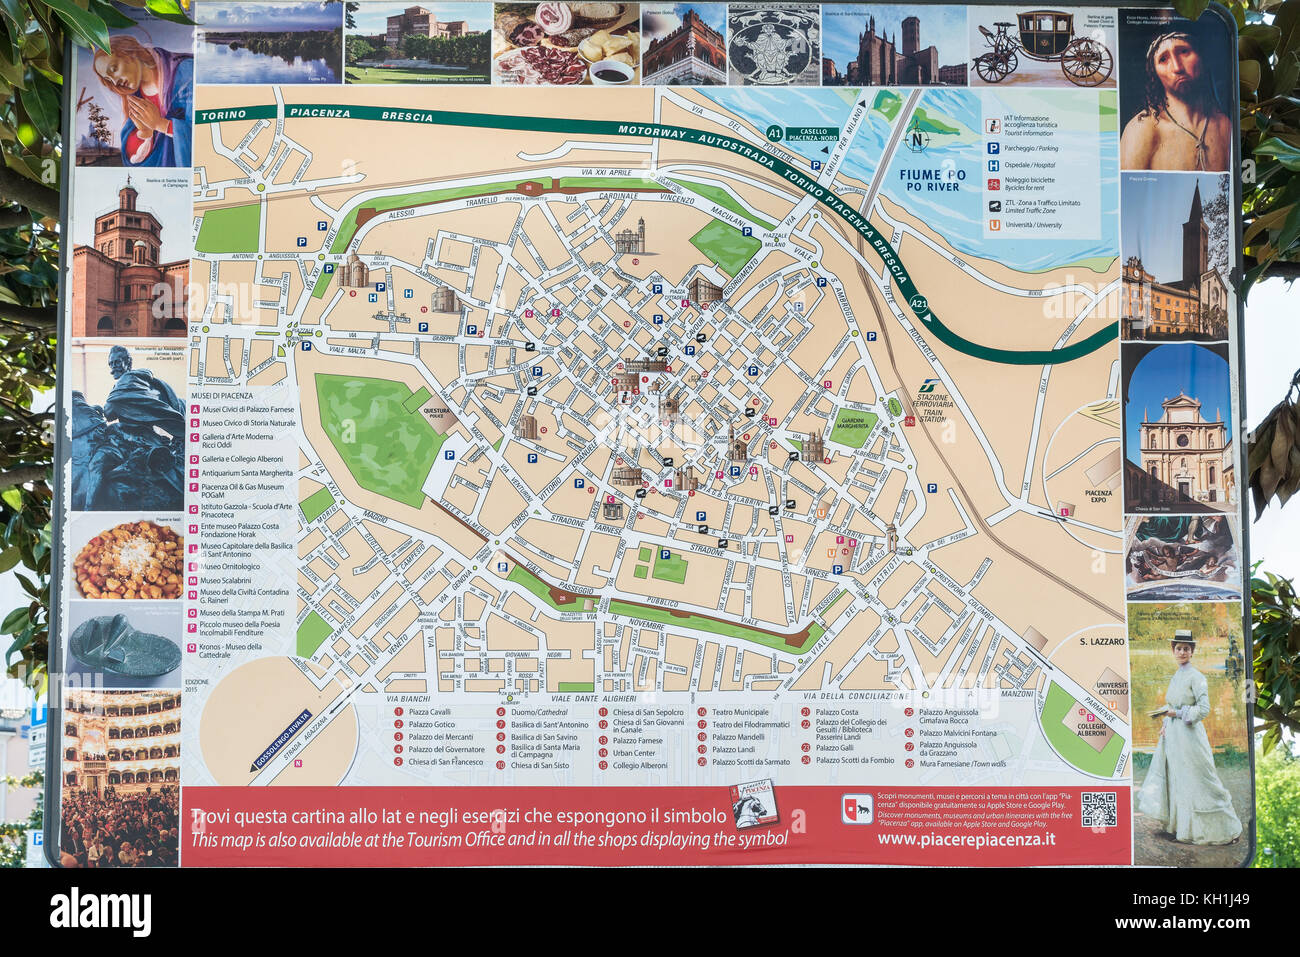 Piacenza, Italien - 20. April 2017: Touristische Karte der Stadt, in der Nähe des Bahnhofs, mit Straßen, Museen, Kirchen und Denkmäler Stockfoto